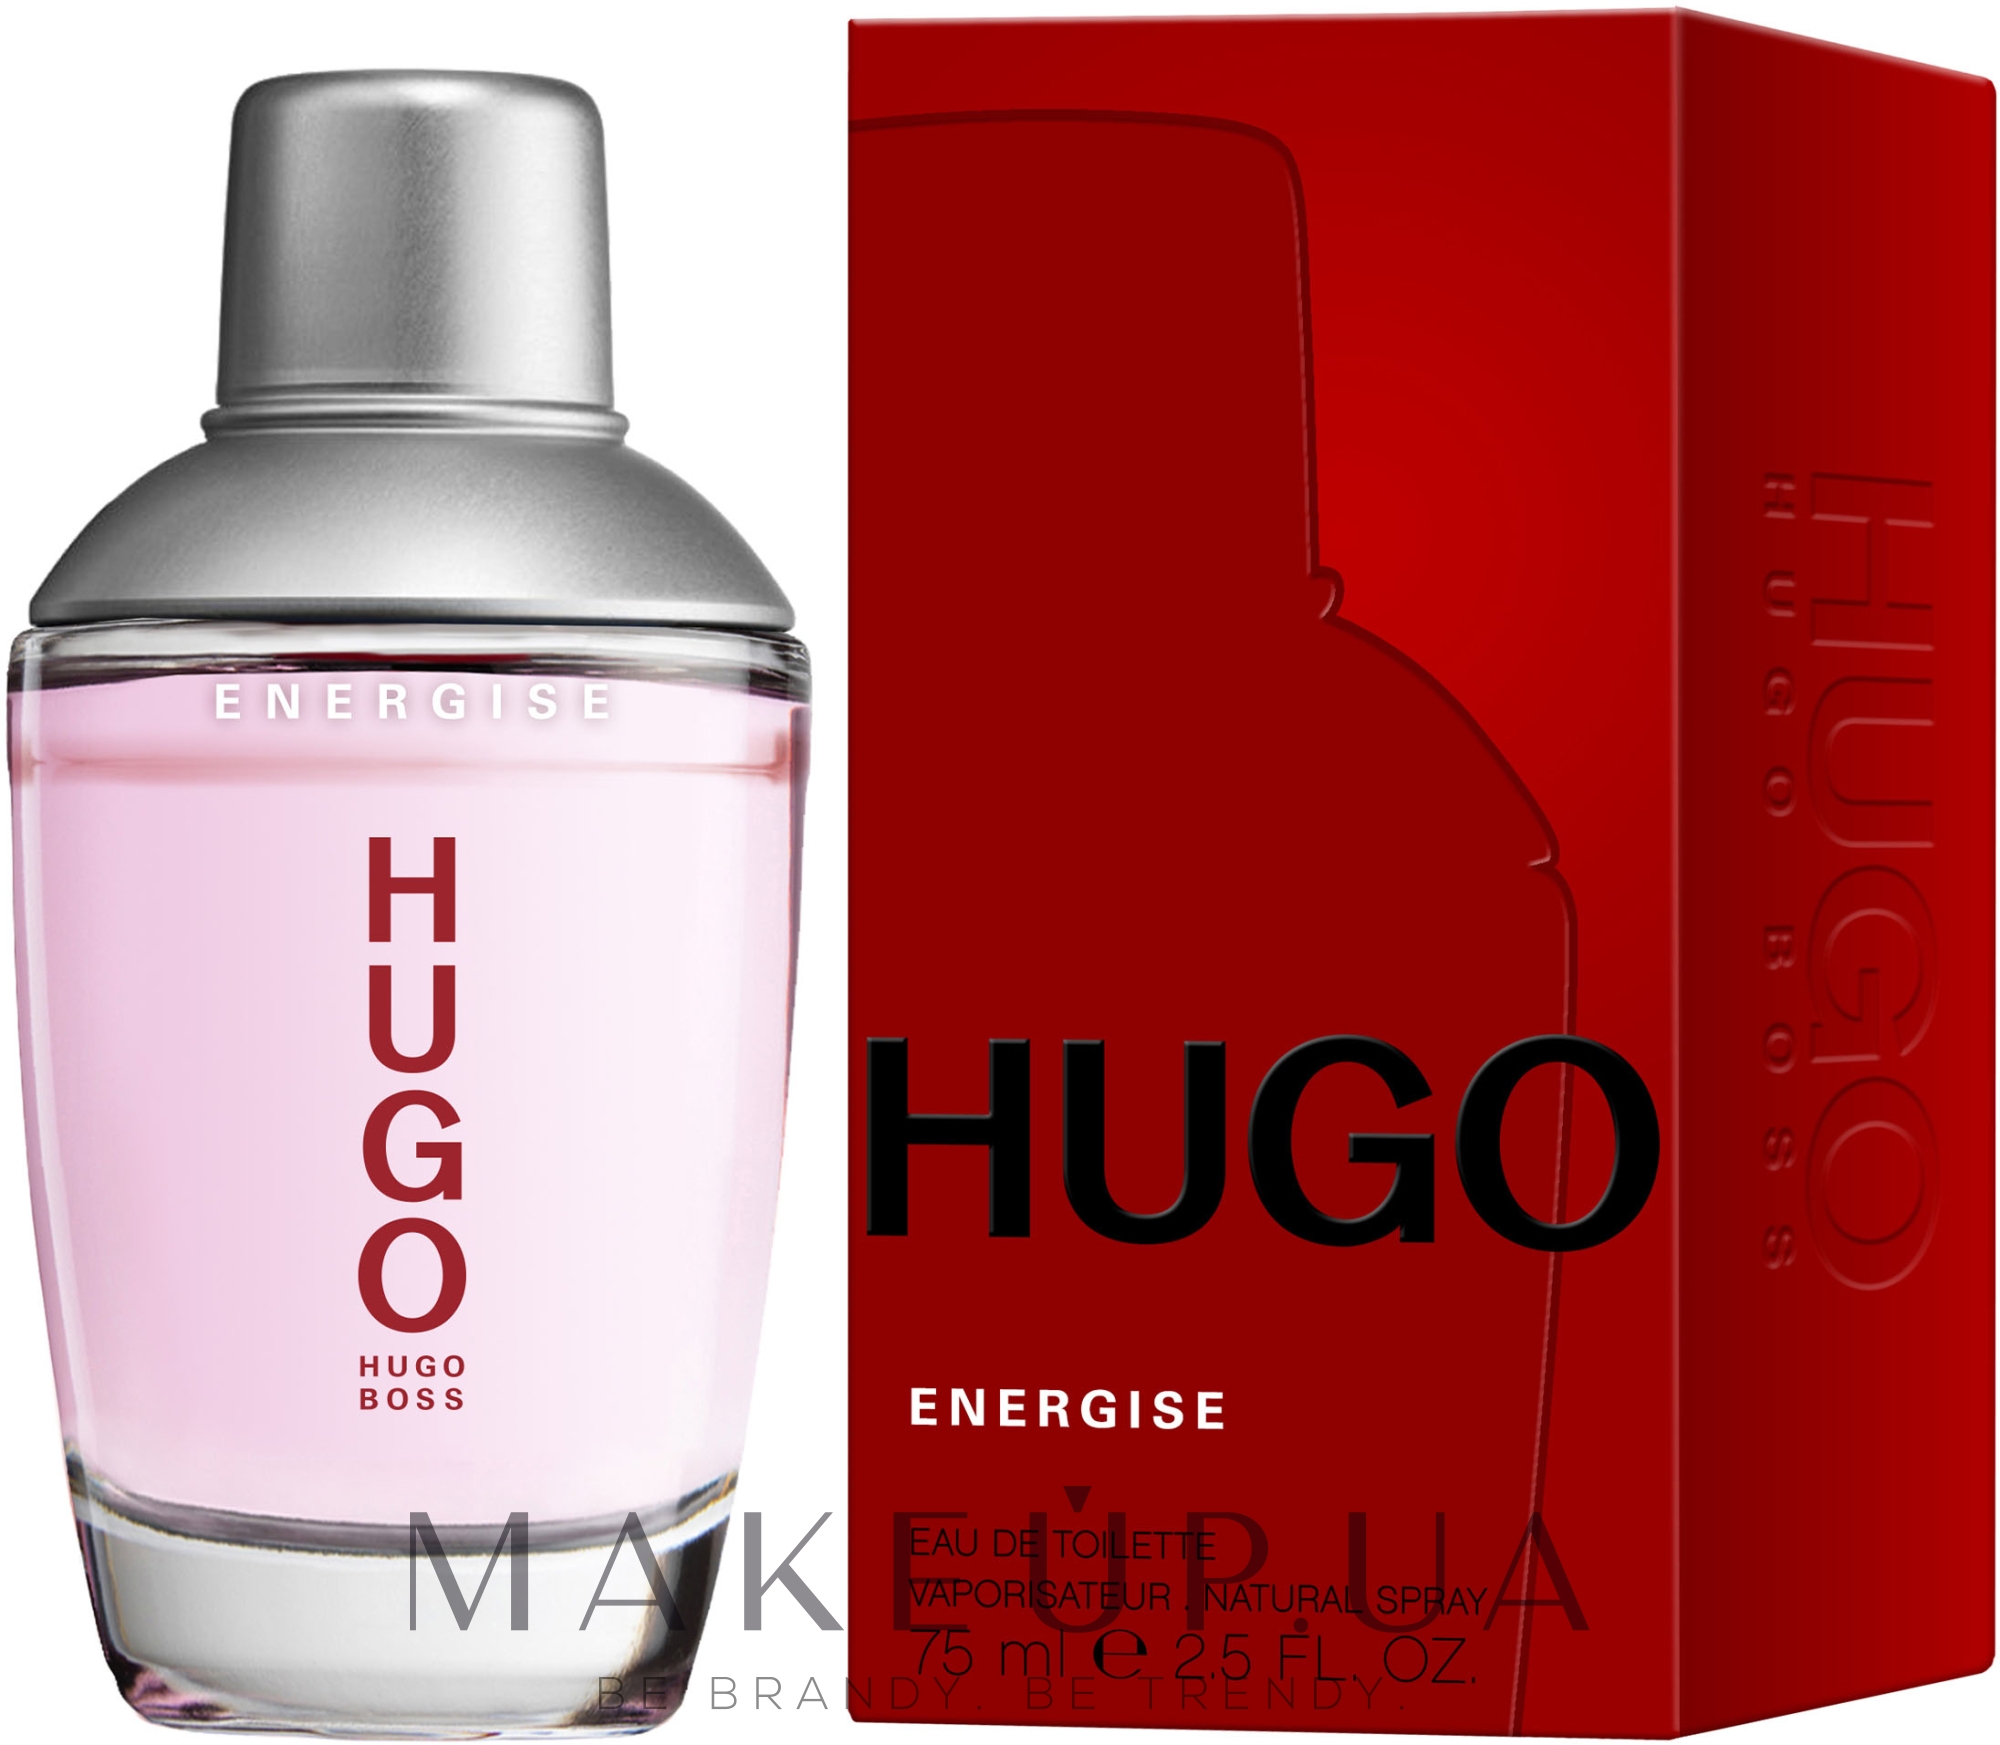 Хьюго босс описание. Hugo Boss Energise 75ml. Hugo Boss Energise men 75ml EDT. Boss Hugo Energise men 75ml. Духи Hugo Boss Energise мужские.